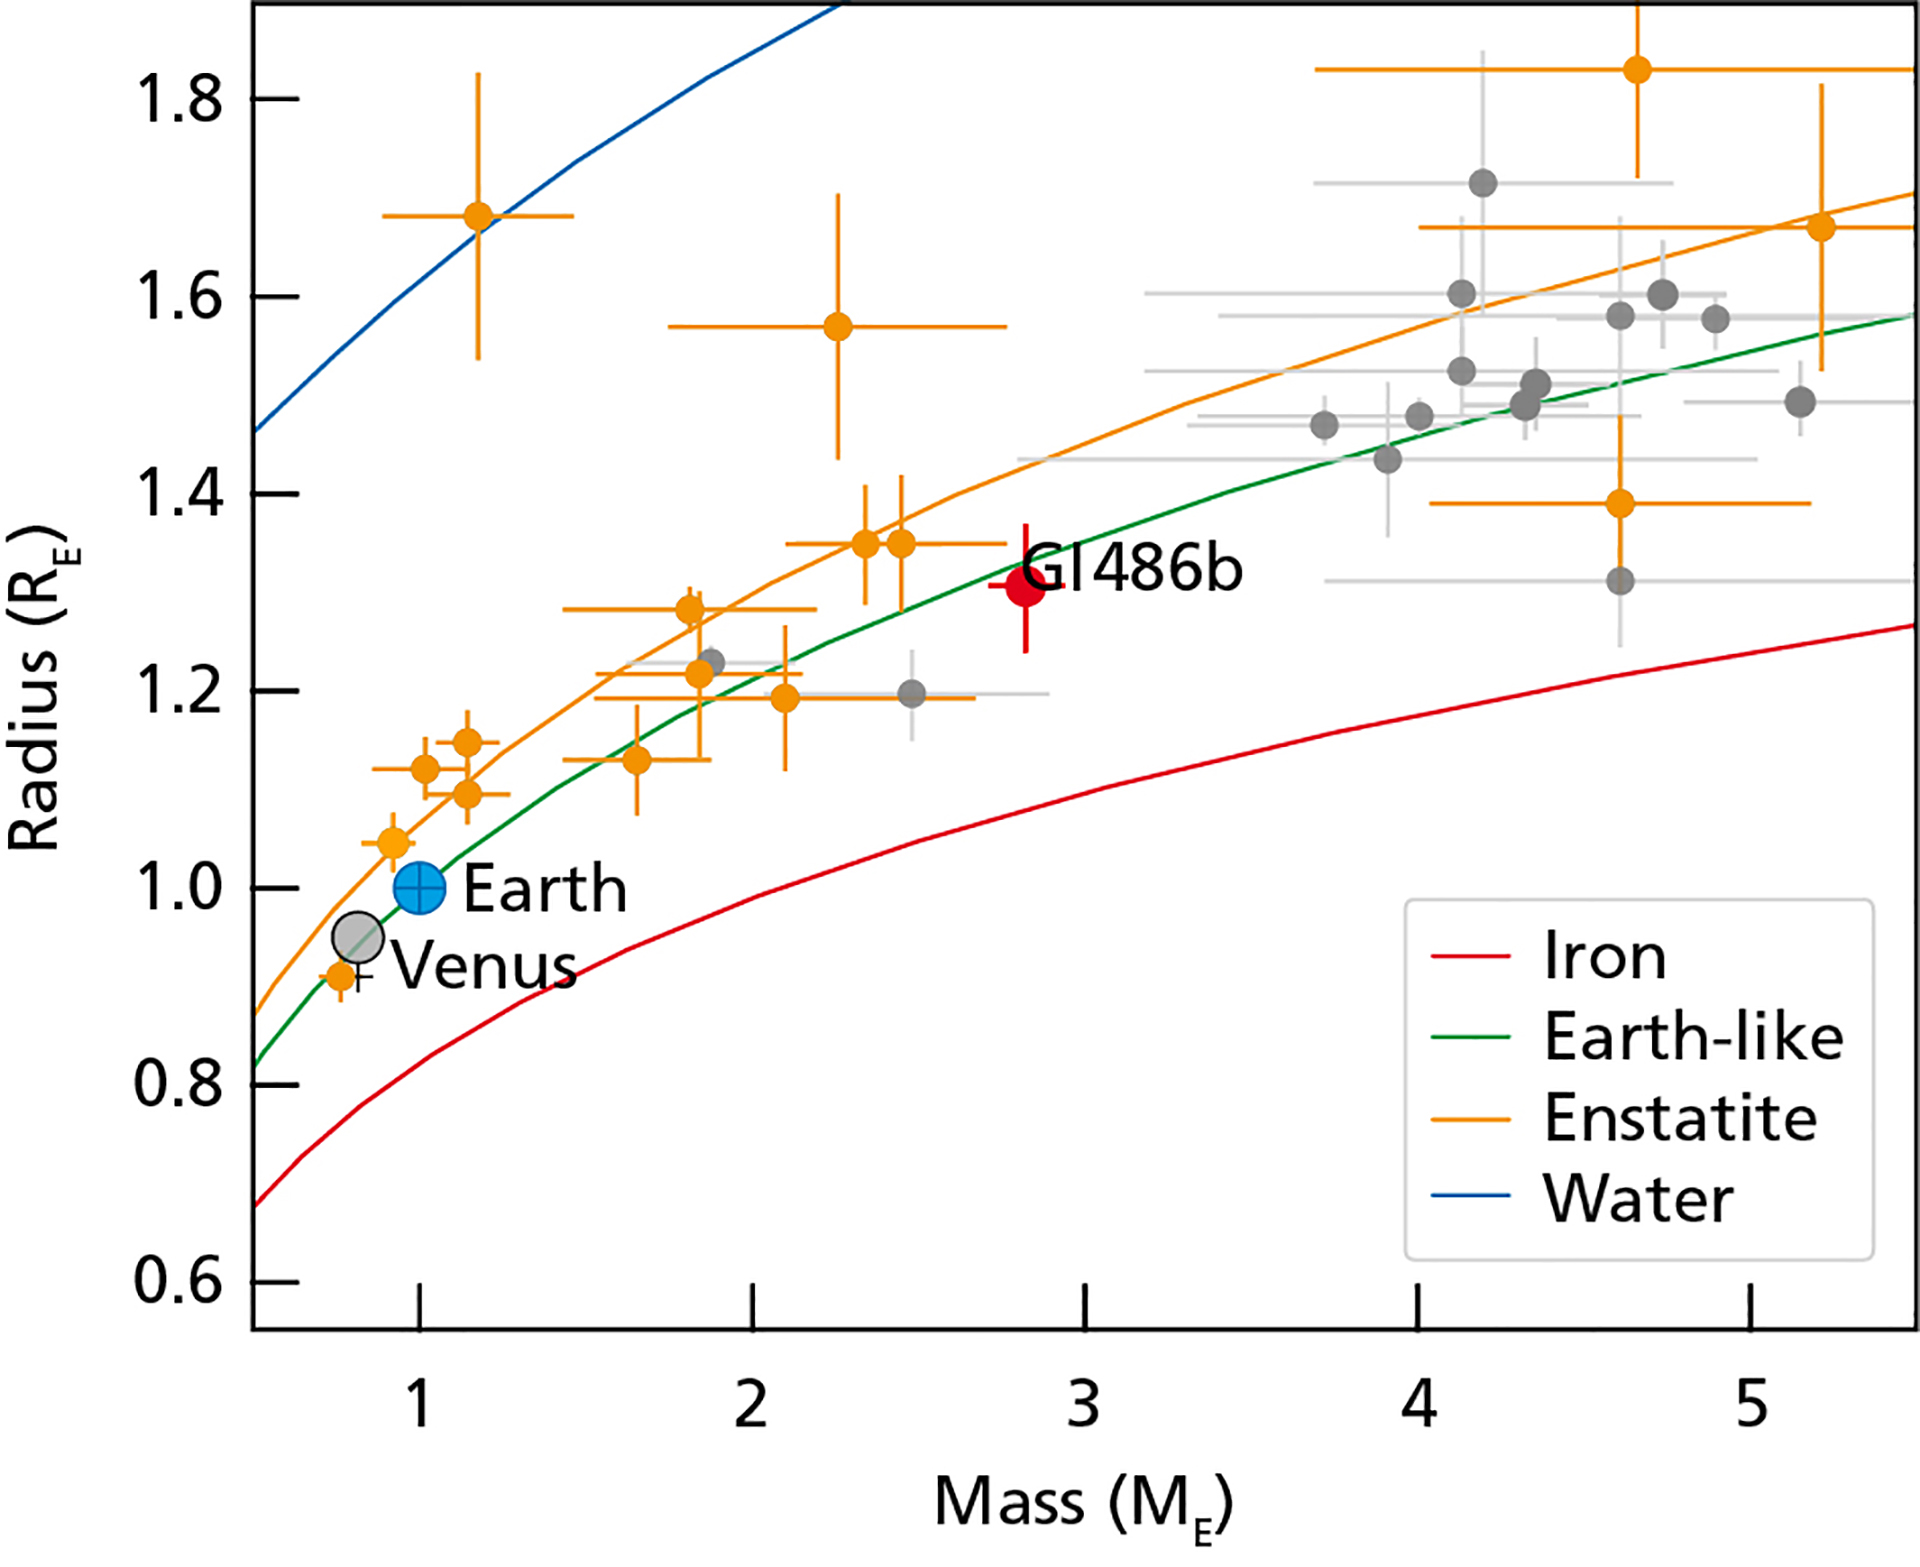 El diagrama proporciona una estimación de las composiciones interiores de los exoplanetas seleccionados en función de sus masas y radios en unidades terrestres. El punto rojo representa a Gliese 486b, y los símbolos naranjas representan planetas alrededor de estrellas frías como Gliese 486. Los puntos grises muestran planetas alojados por estrellas más calientes. Las curvas de color indican las relaciones teóricas de radio de masa para el agua pura a 700 K (azul), para la enstatita mineral (naranja), para la Tierra (verde) y el hierro puro (rojo). En comparación, el diagrama también destaca Venus y la Tierra. Crédito: Trifonov et al./Departamento de gráficos MPIA.